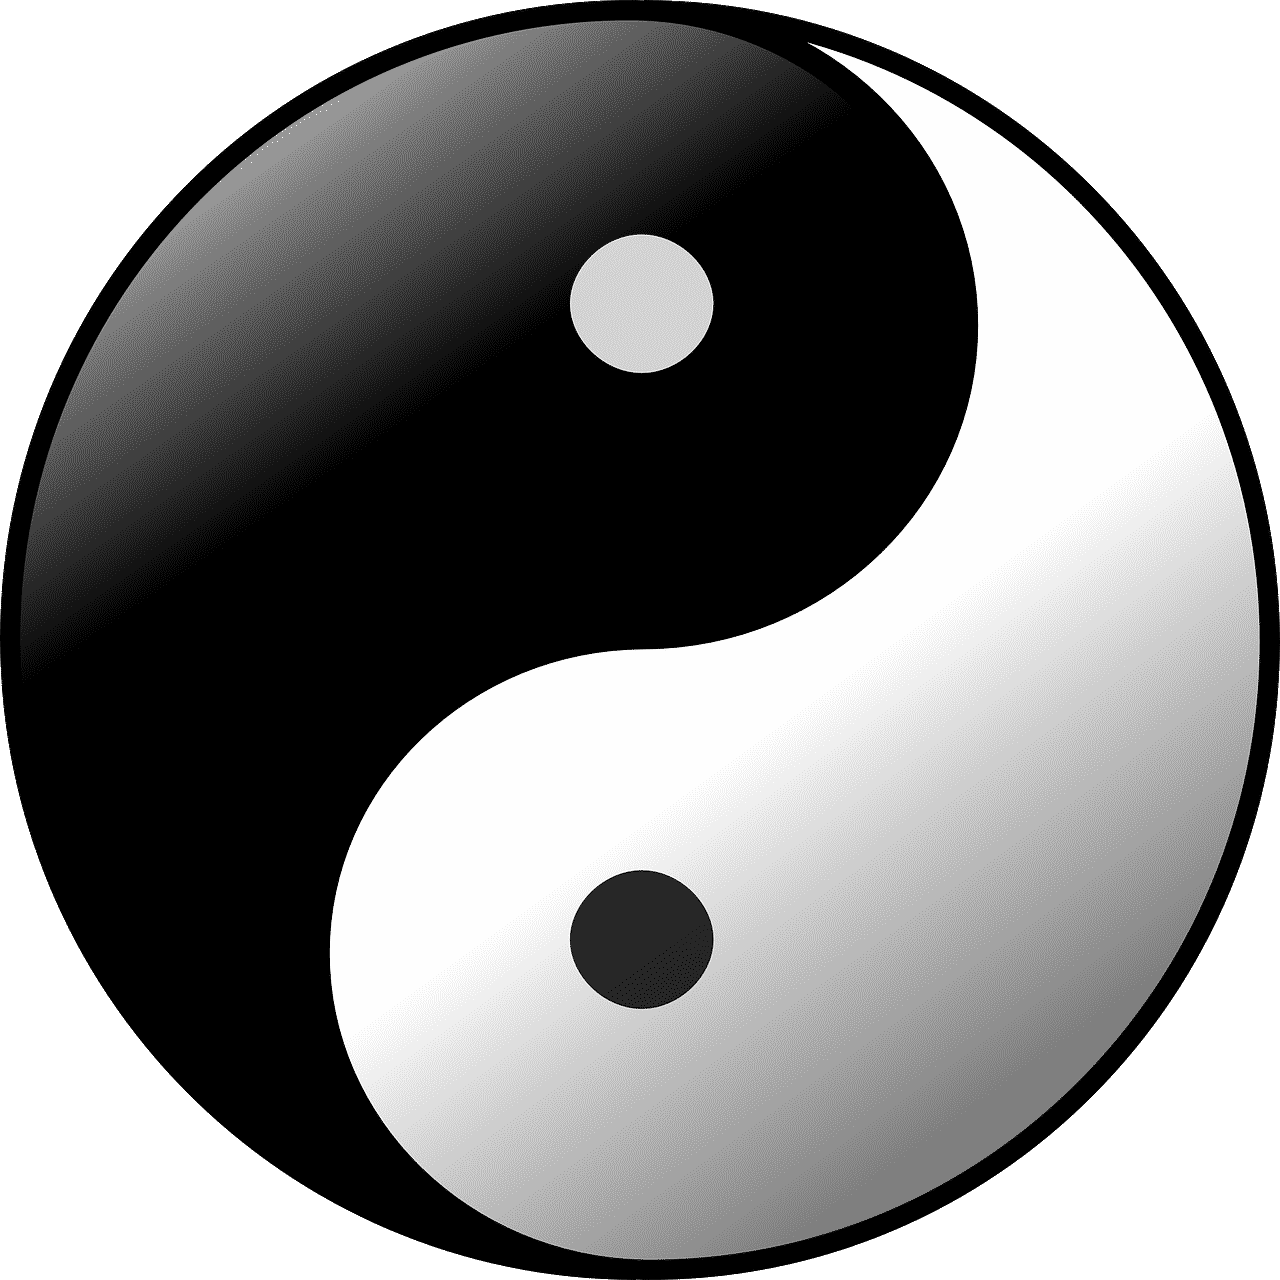 Gute Beziehung - Ausgeglichenheit - Yin und Yang